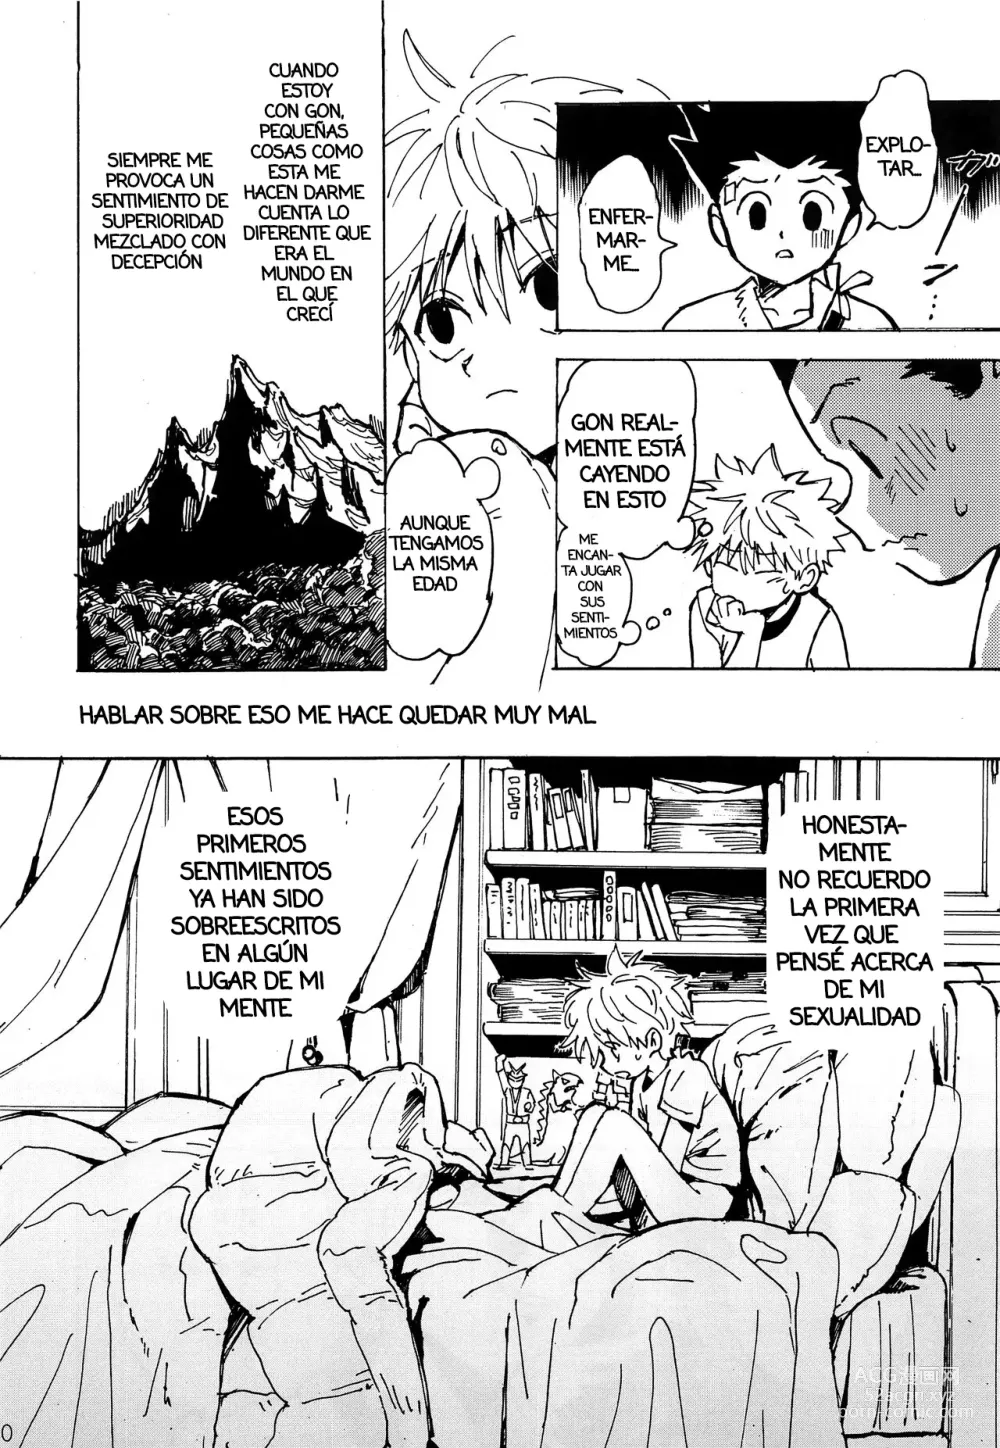 Page 9 of doujinshi Imprudencia Juvenil